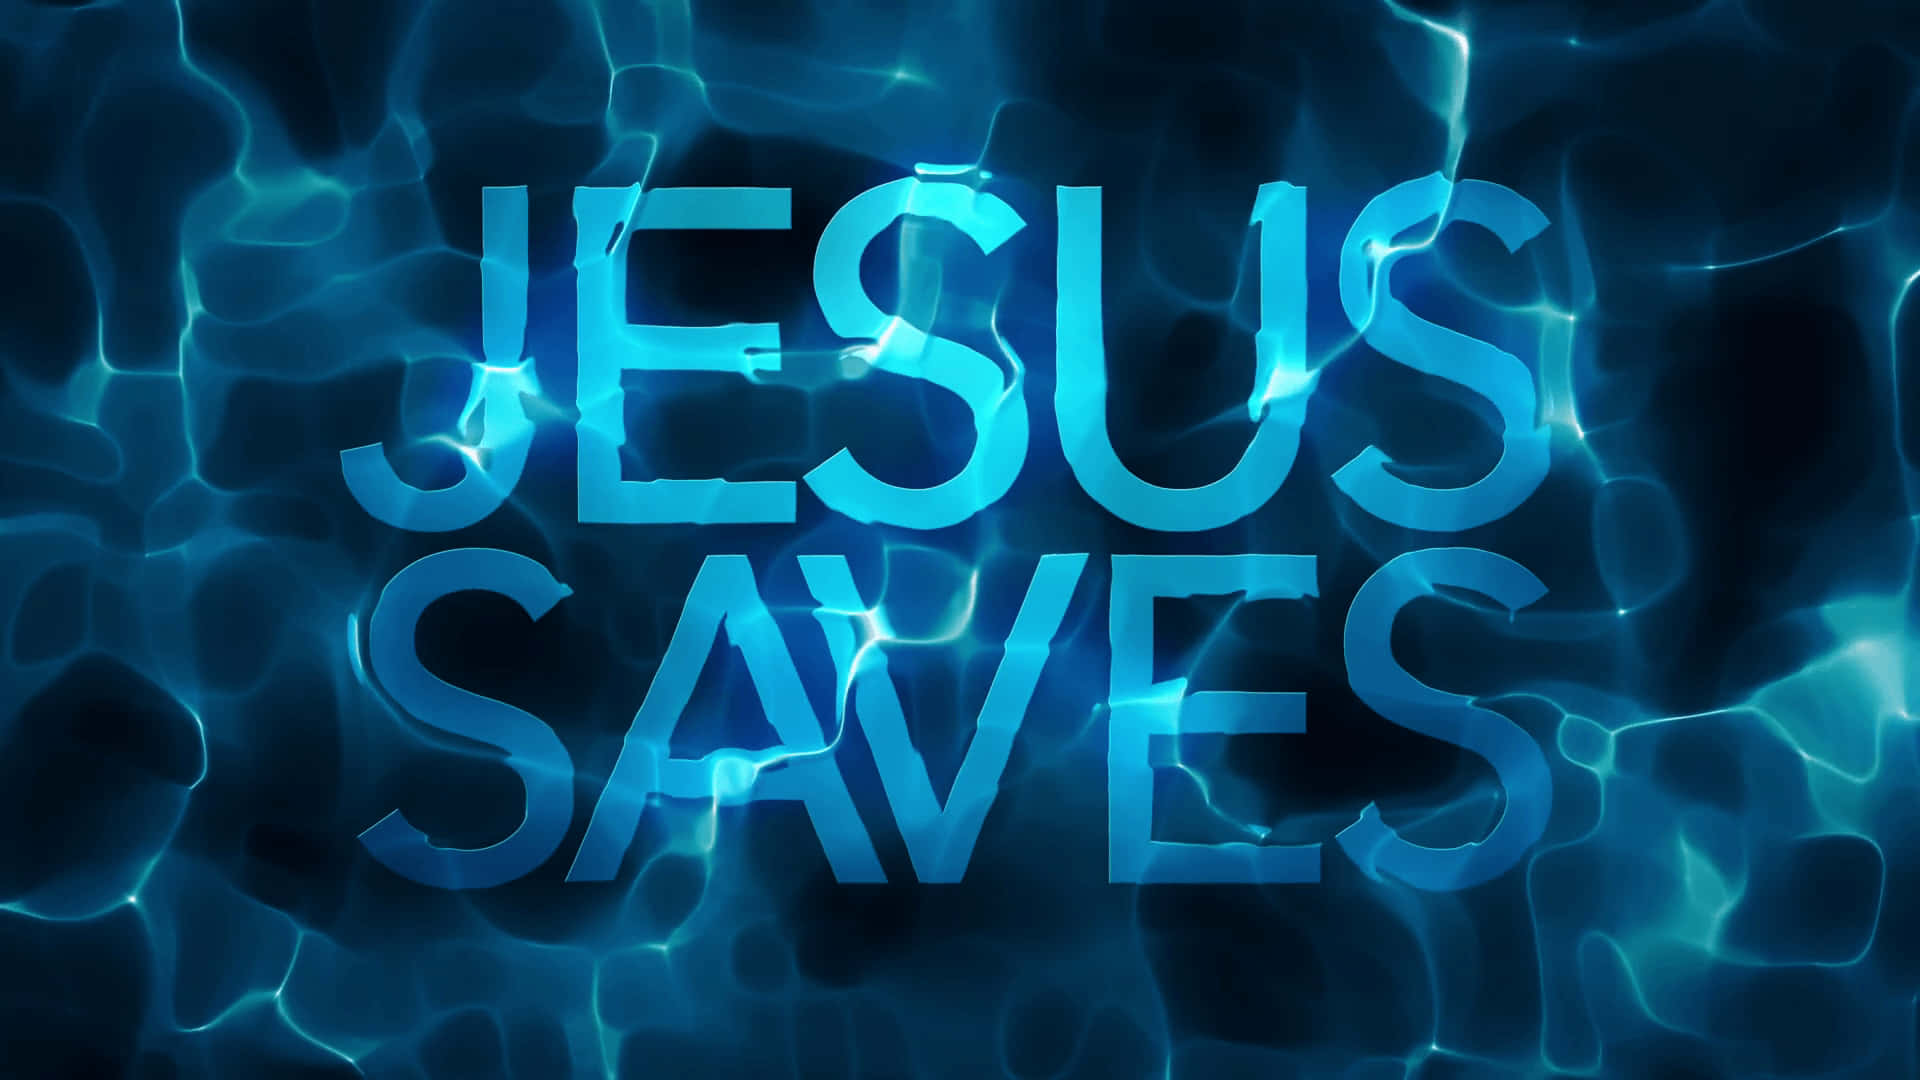 Jesusräddar Oss Från Våra Synder. Wallpaper